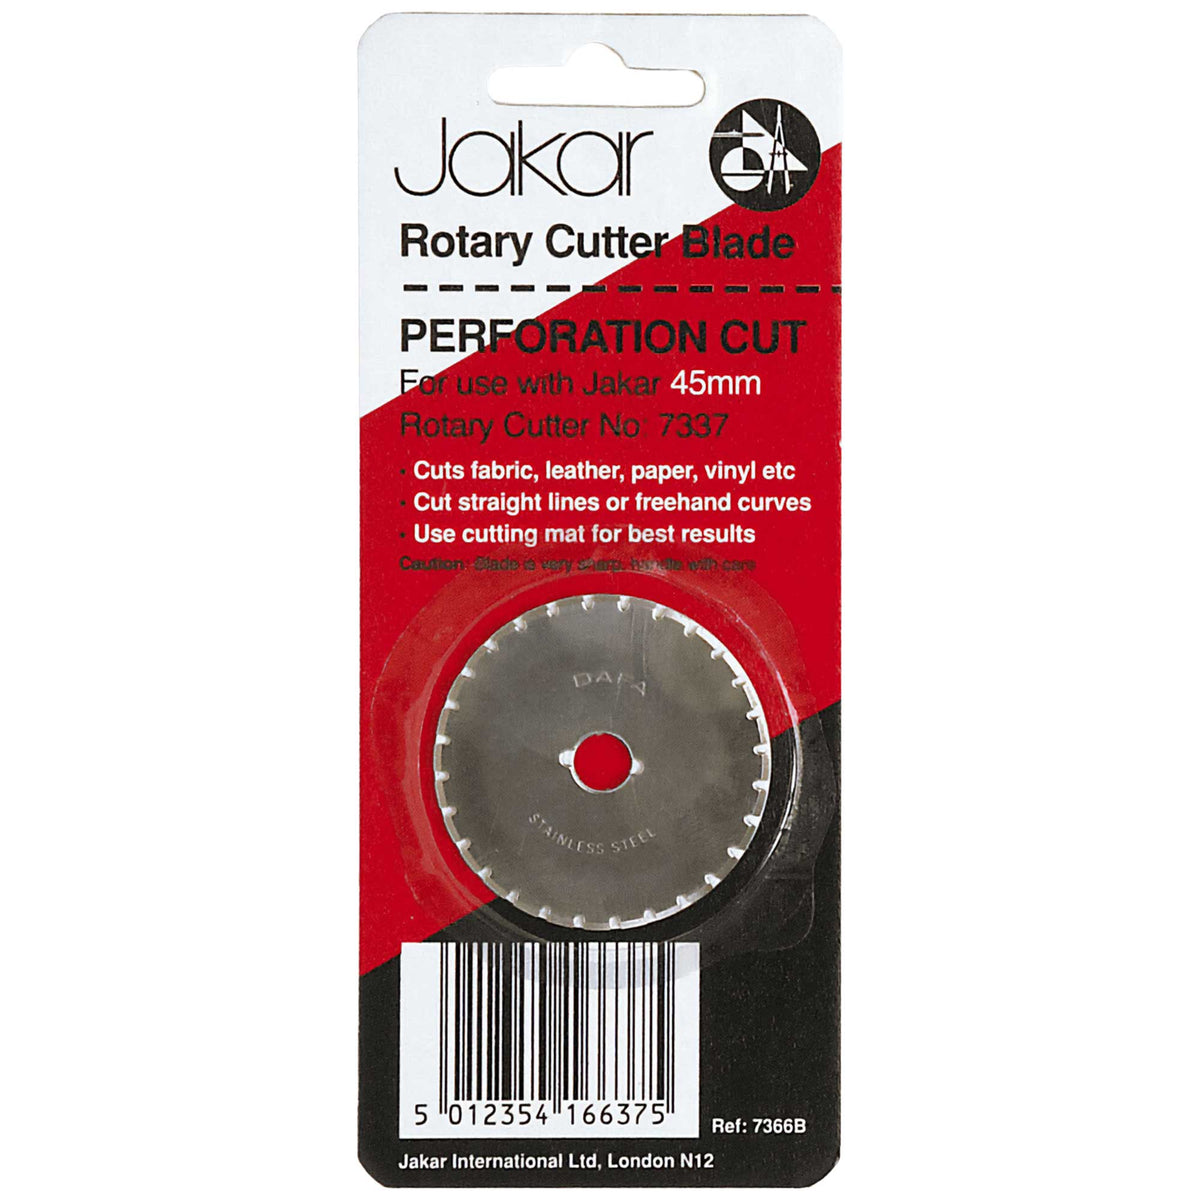 Jakar Rotary Cutter Blade - Perforation Cut